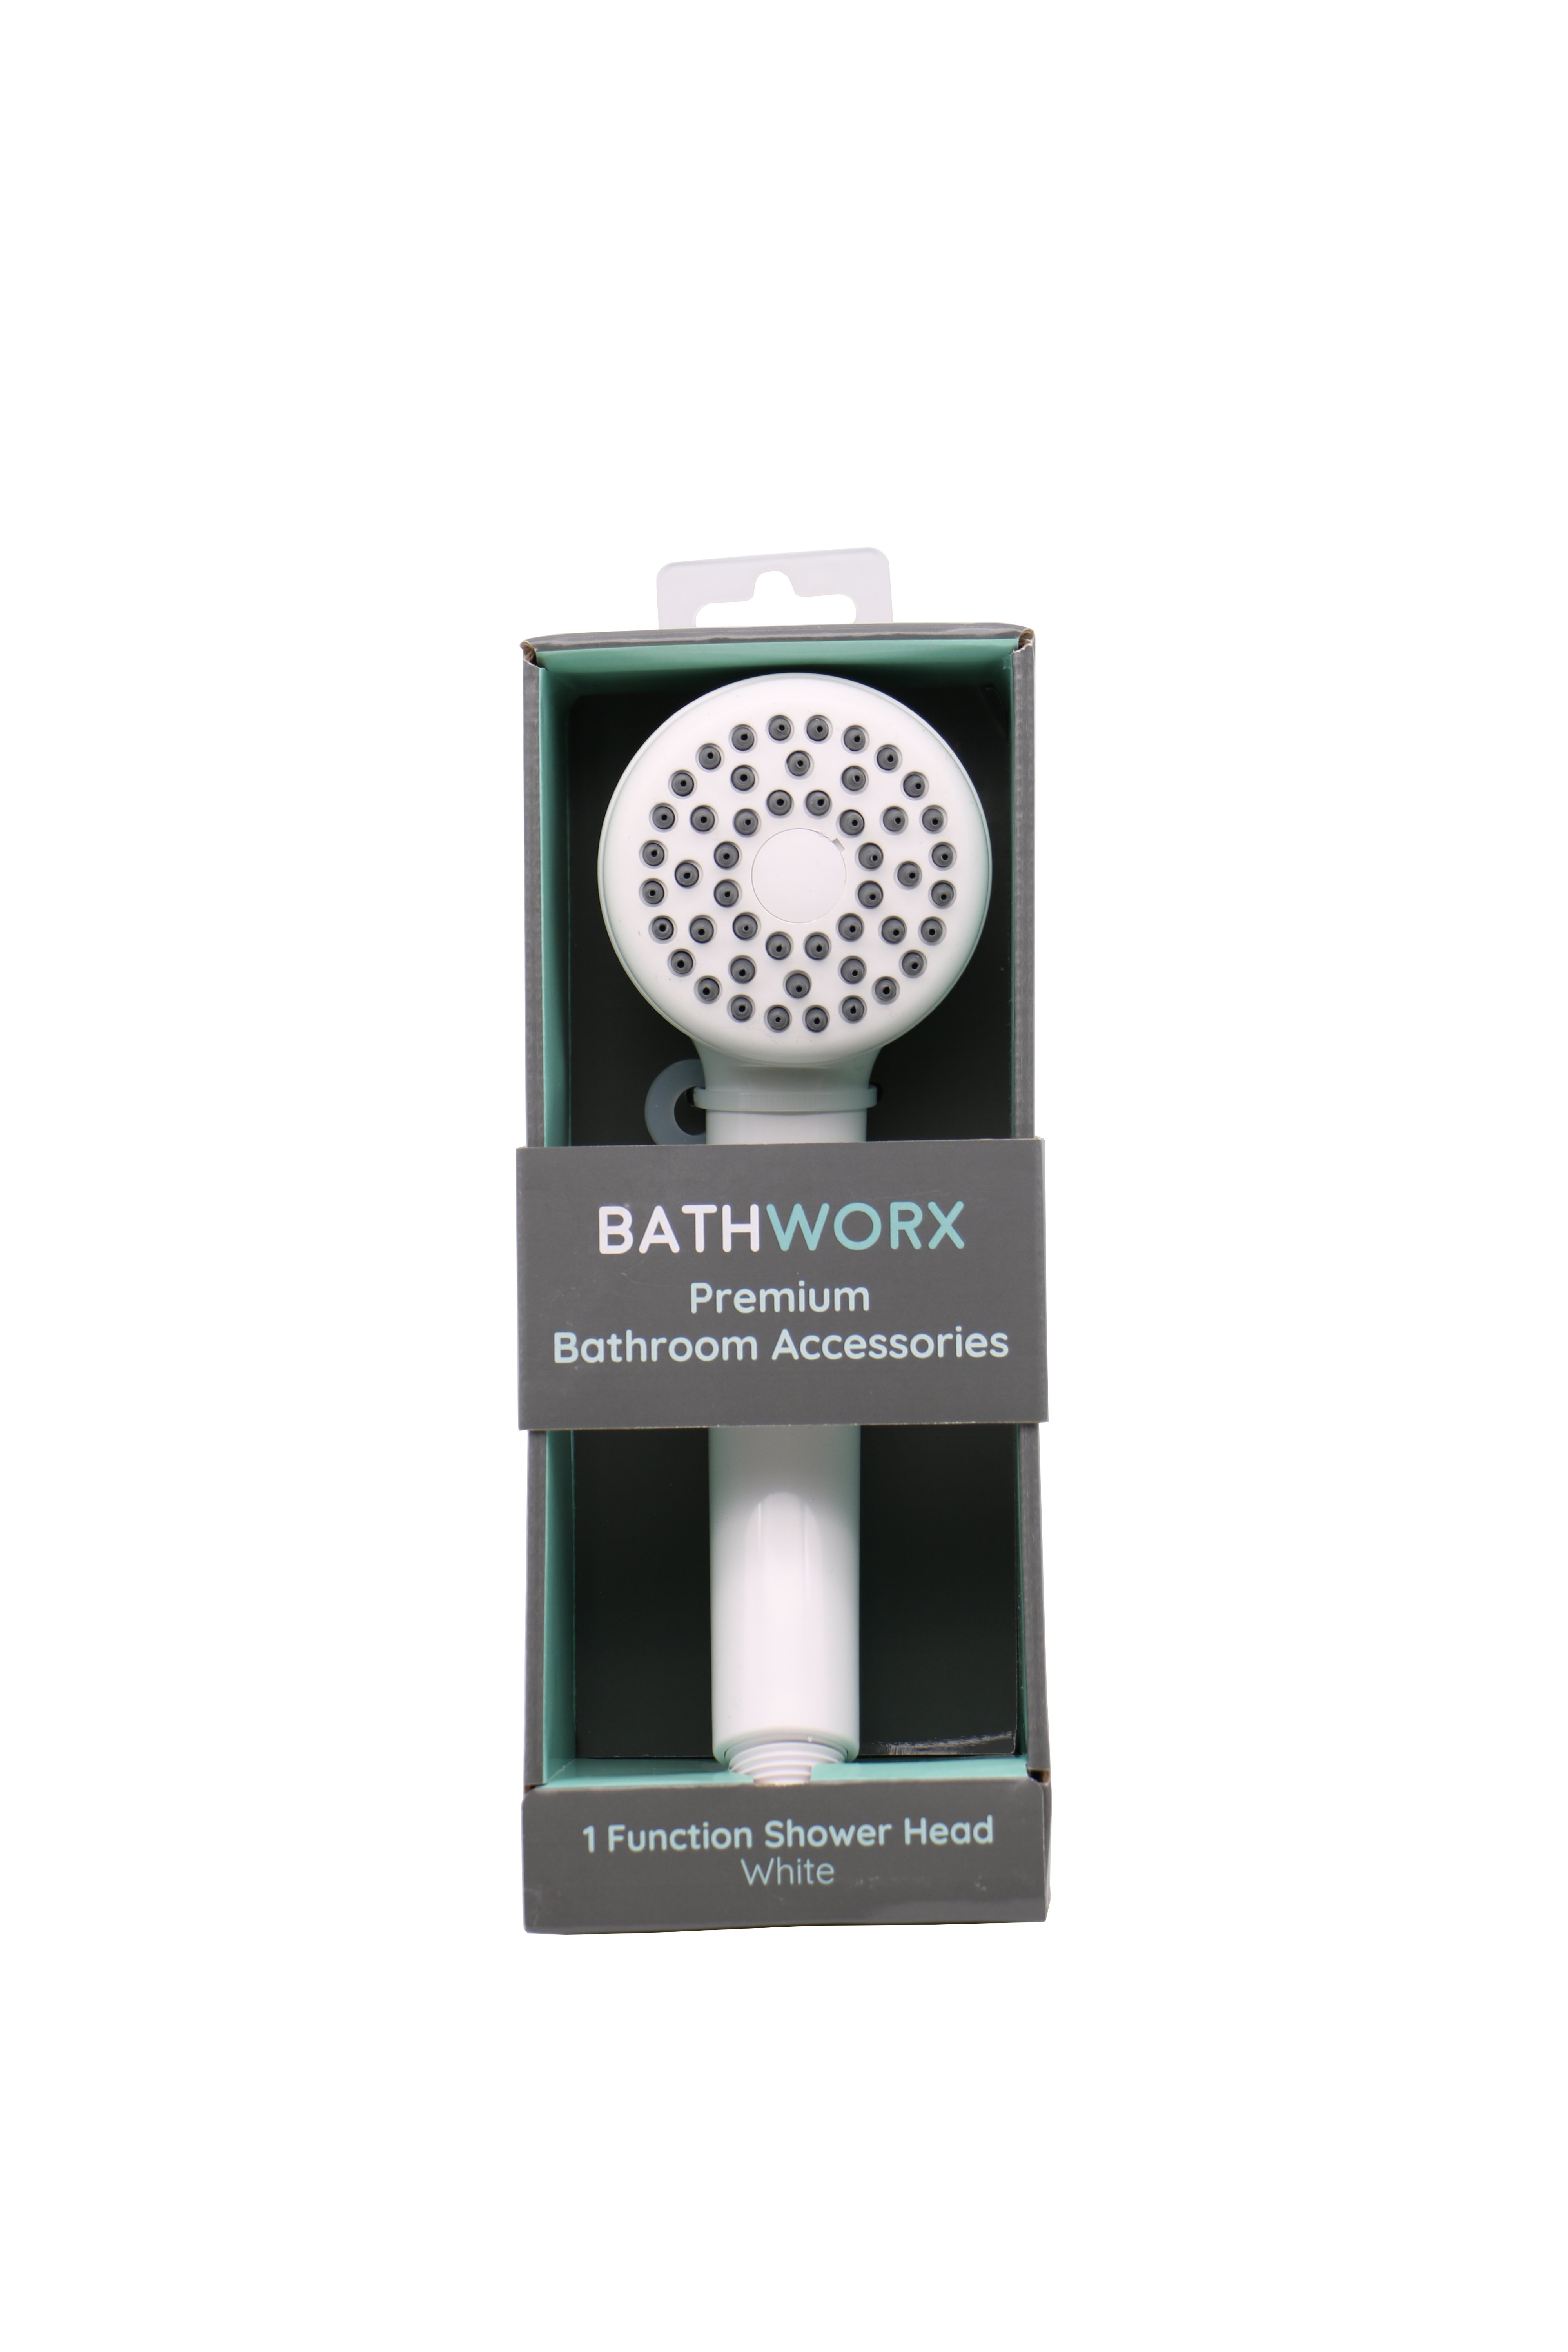 Bathworx 1 Function Shower Head (White)